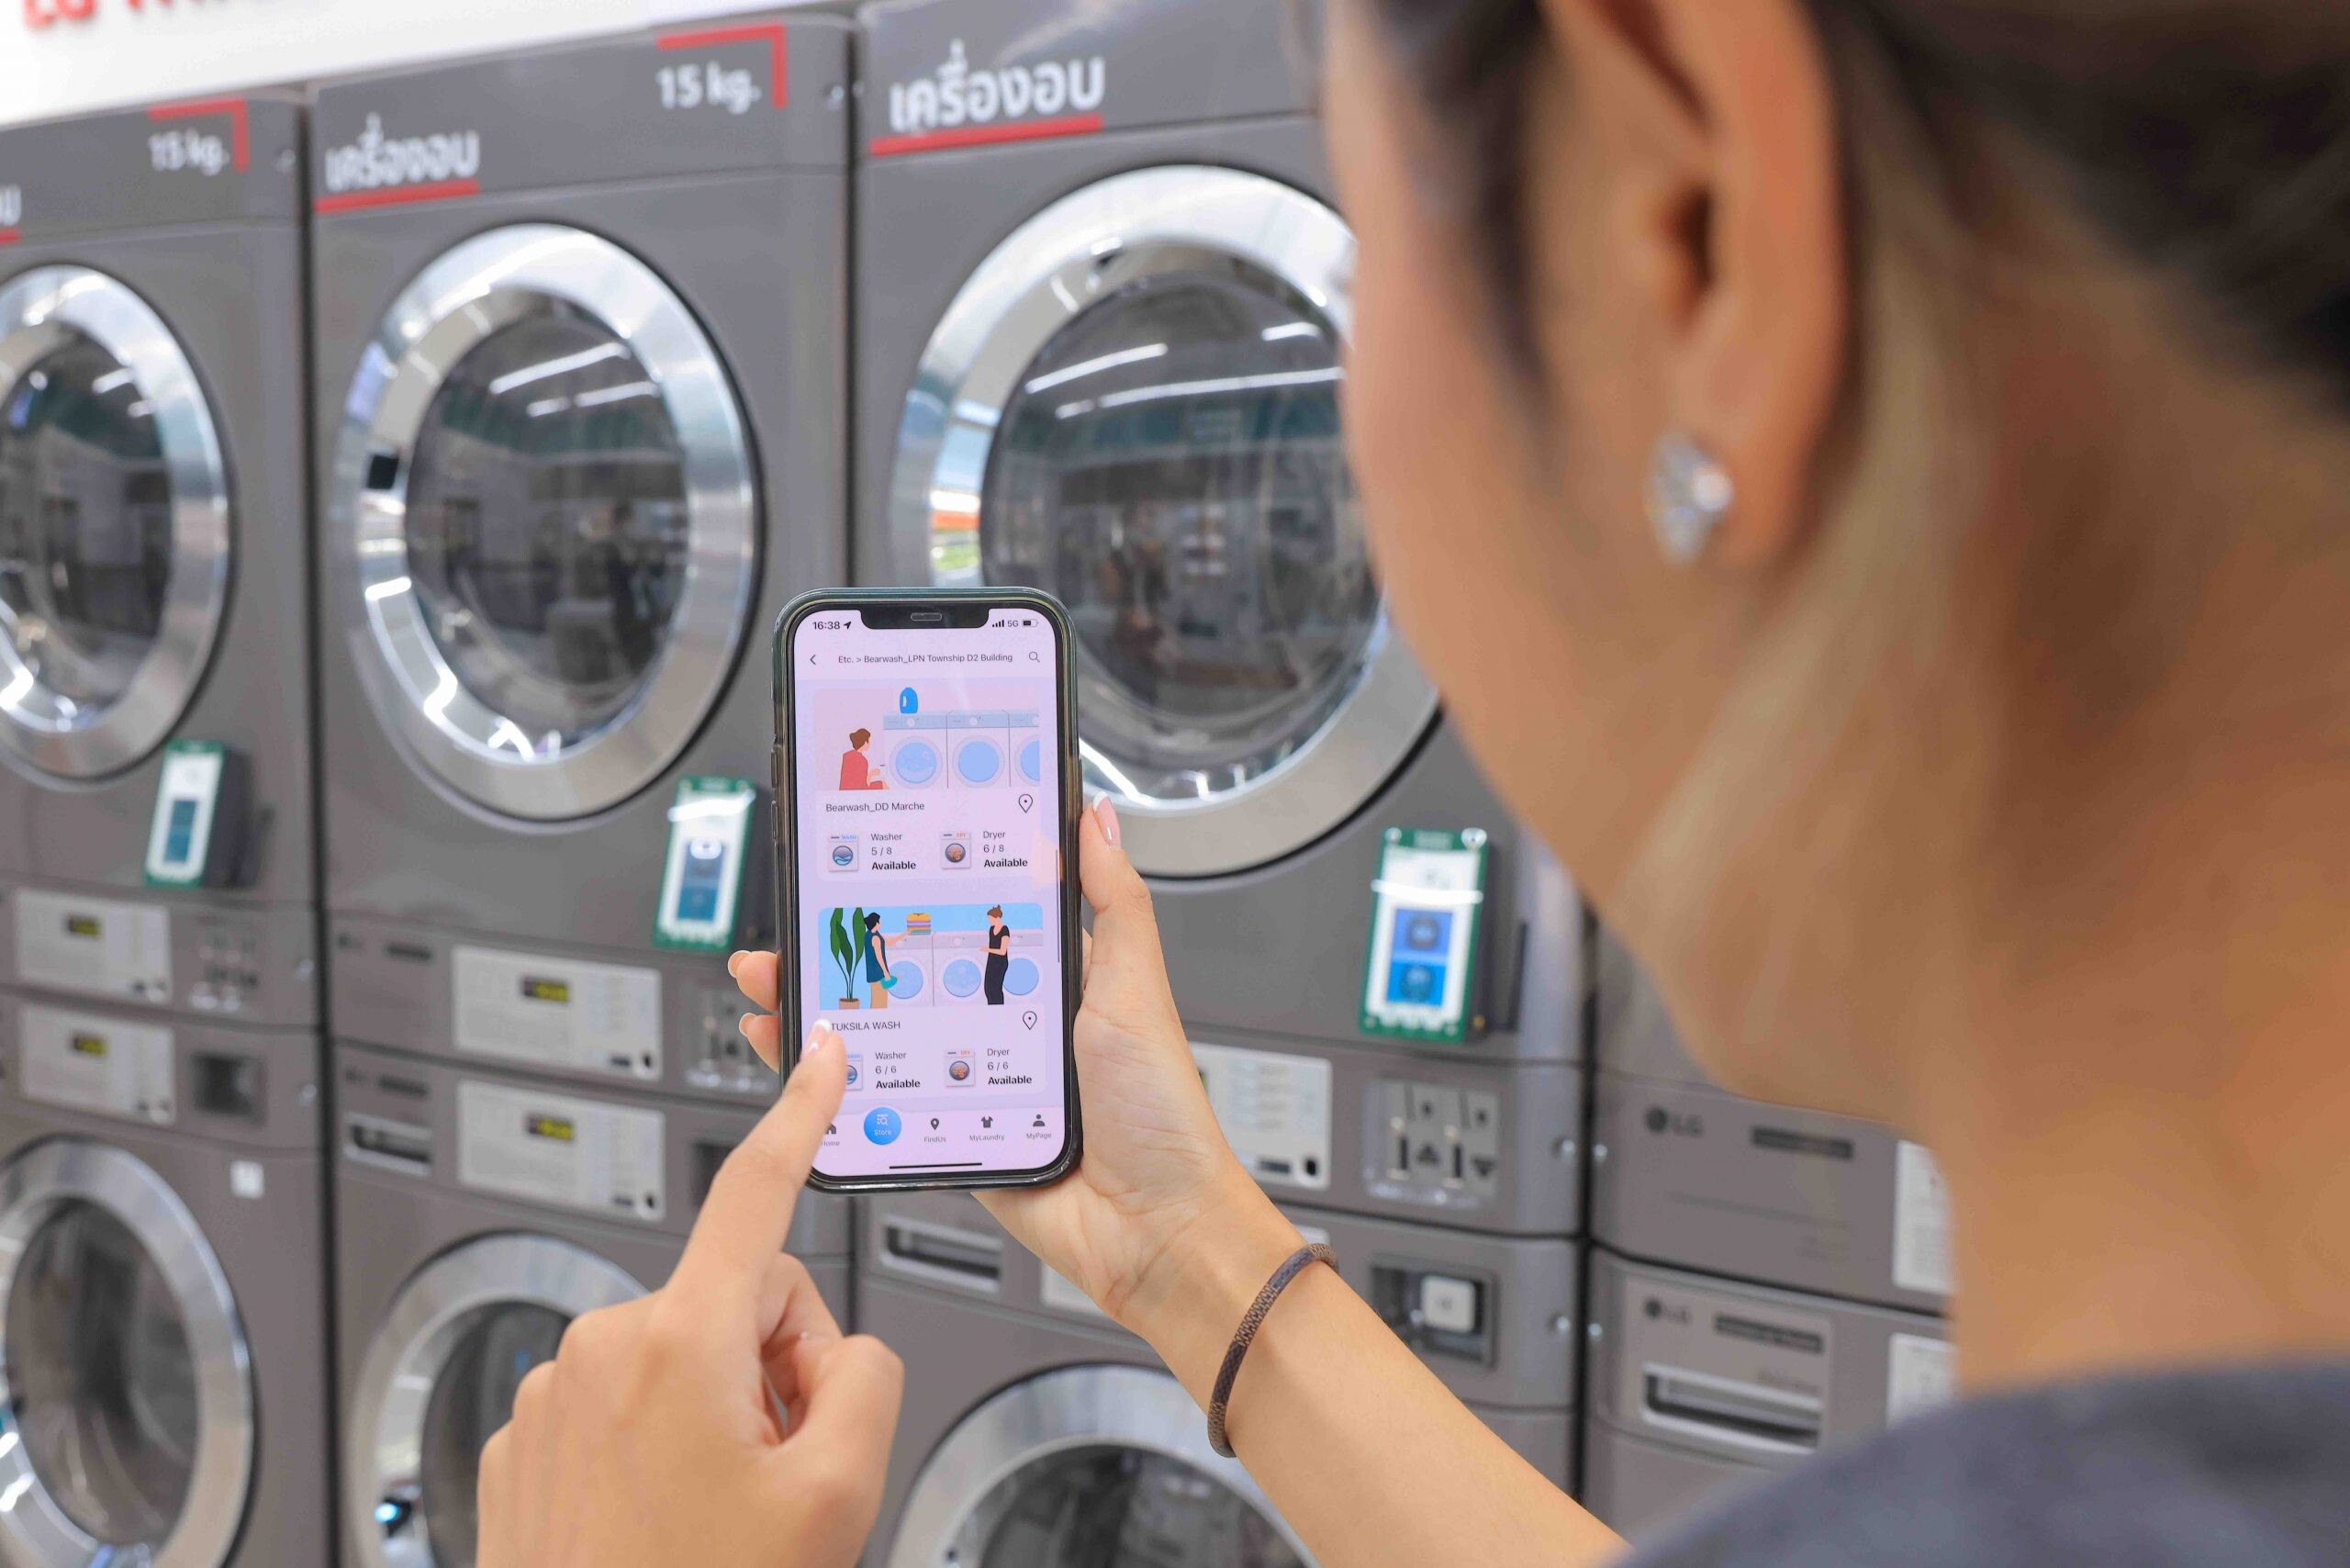 แอลจี จับมือ 'แบร์วอช' และ 'แอล.พี.เอ็น. ดีเวลลอปเมนท์' เปิดตัว LG Smart Laundry Lounge แห่งแรกในไทย พร้อมบริการแอป LG Laundry Lounge